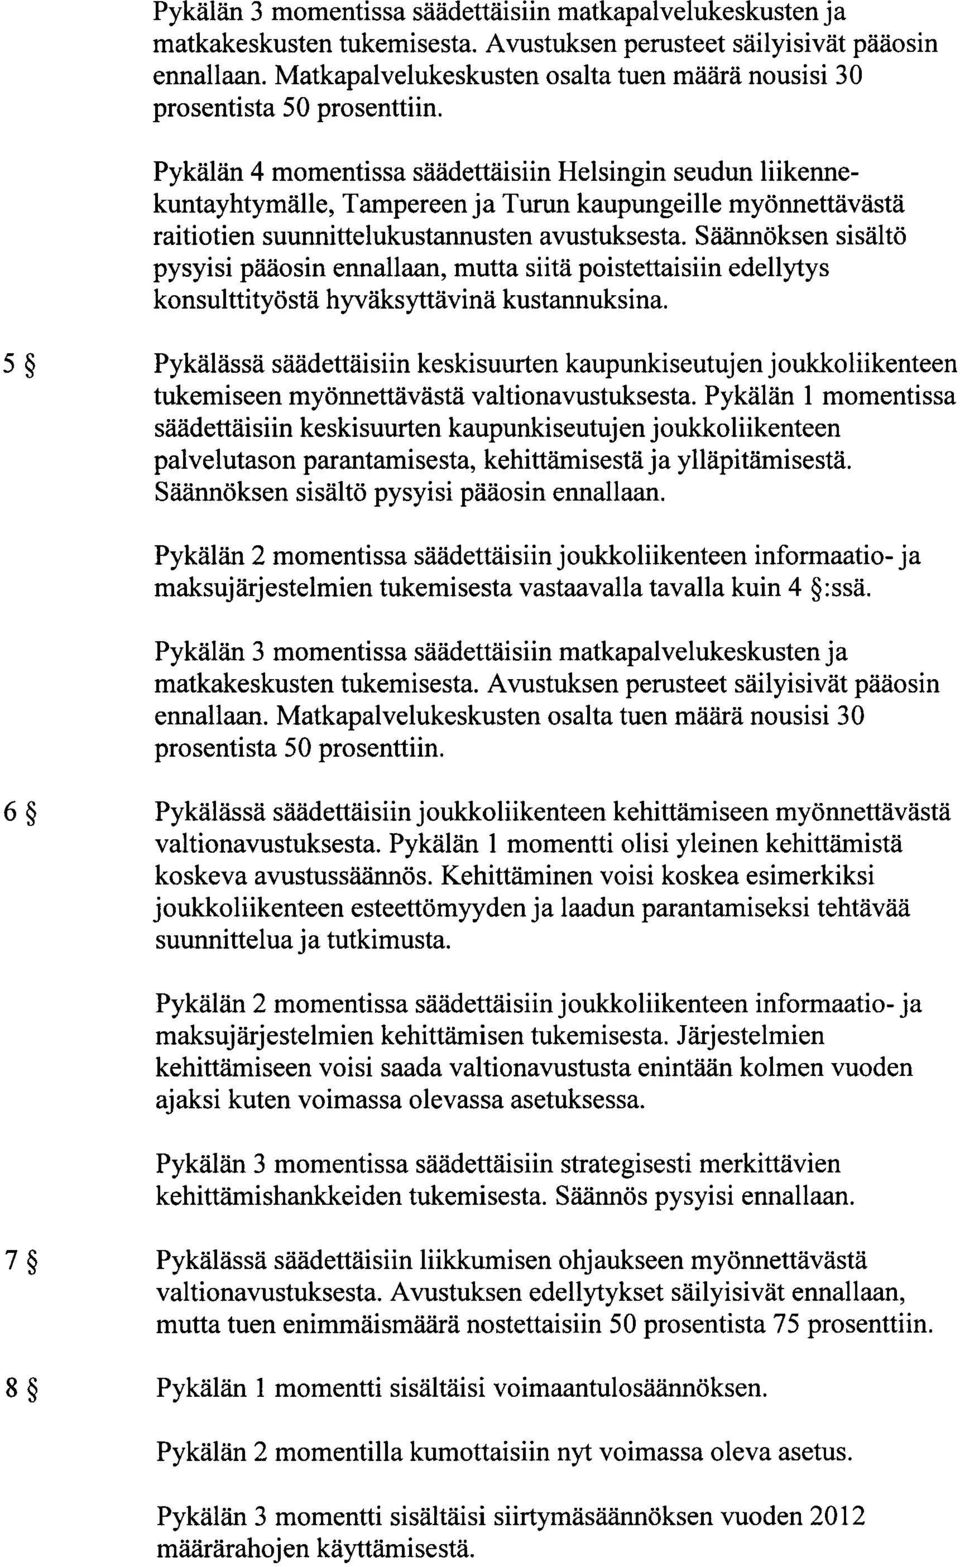 Pykälän 4 momentissa säädettäisiin Helsingin seudun liikennekuntayhtymälle, Tampereen ja Turun kaupungeille myönnettävästä raitiotien suunnittelukustannusten avustuksesta.